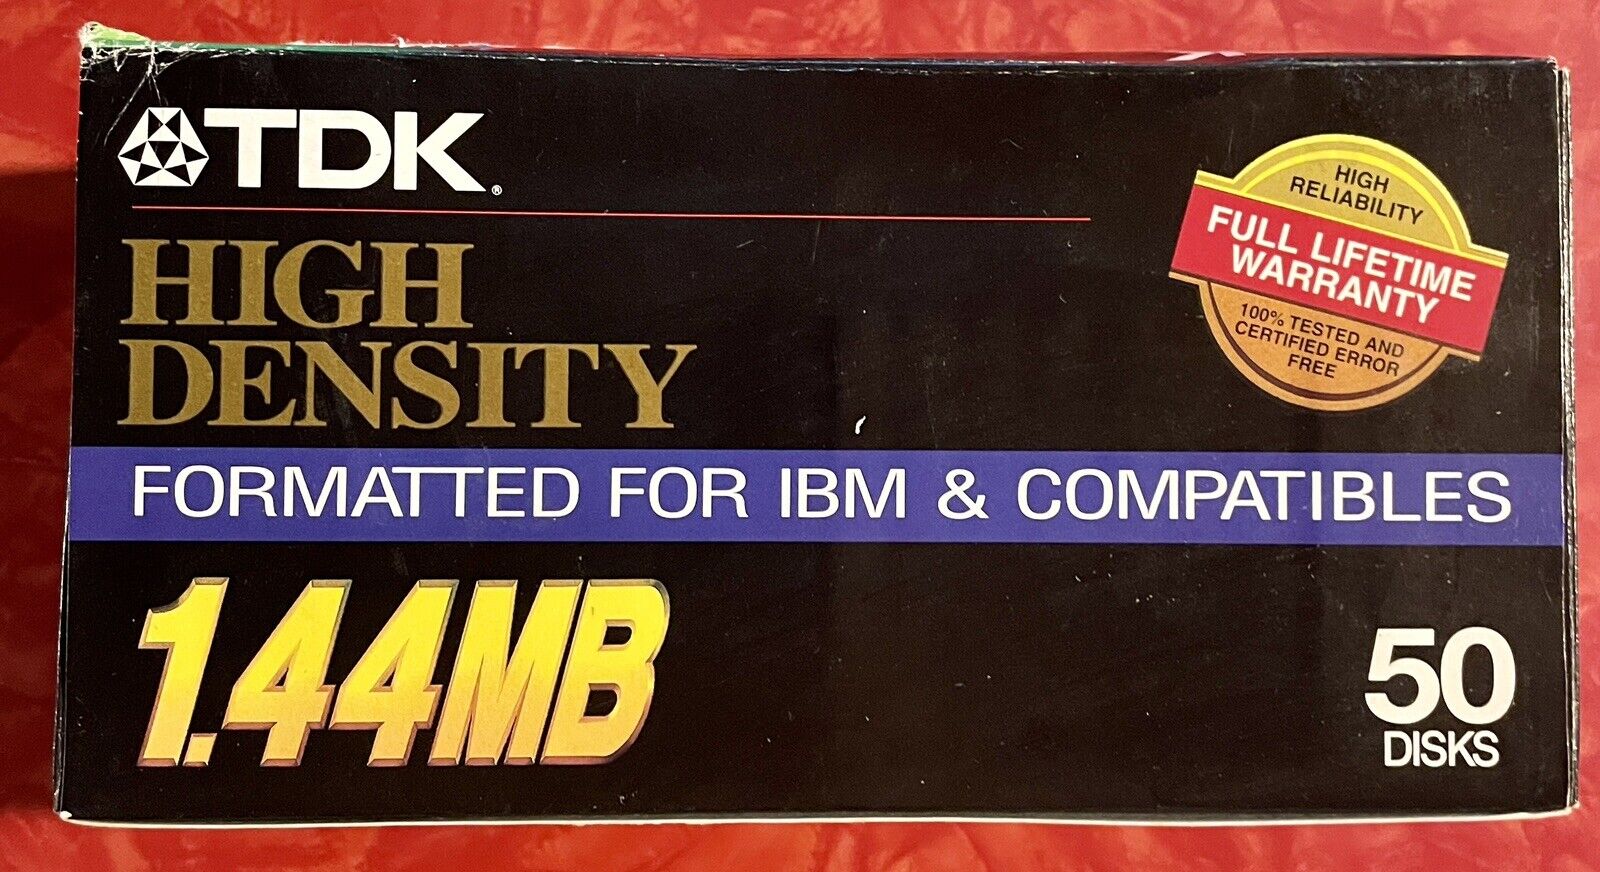 TDK High Density 1.44 MB Formatted for IBM & Compatibles 50-pack SEALED